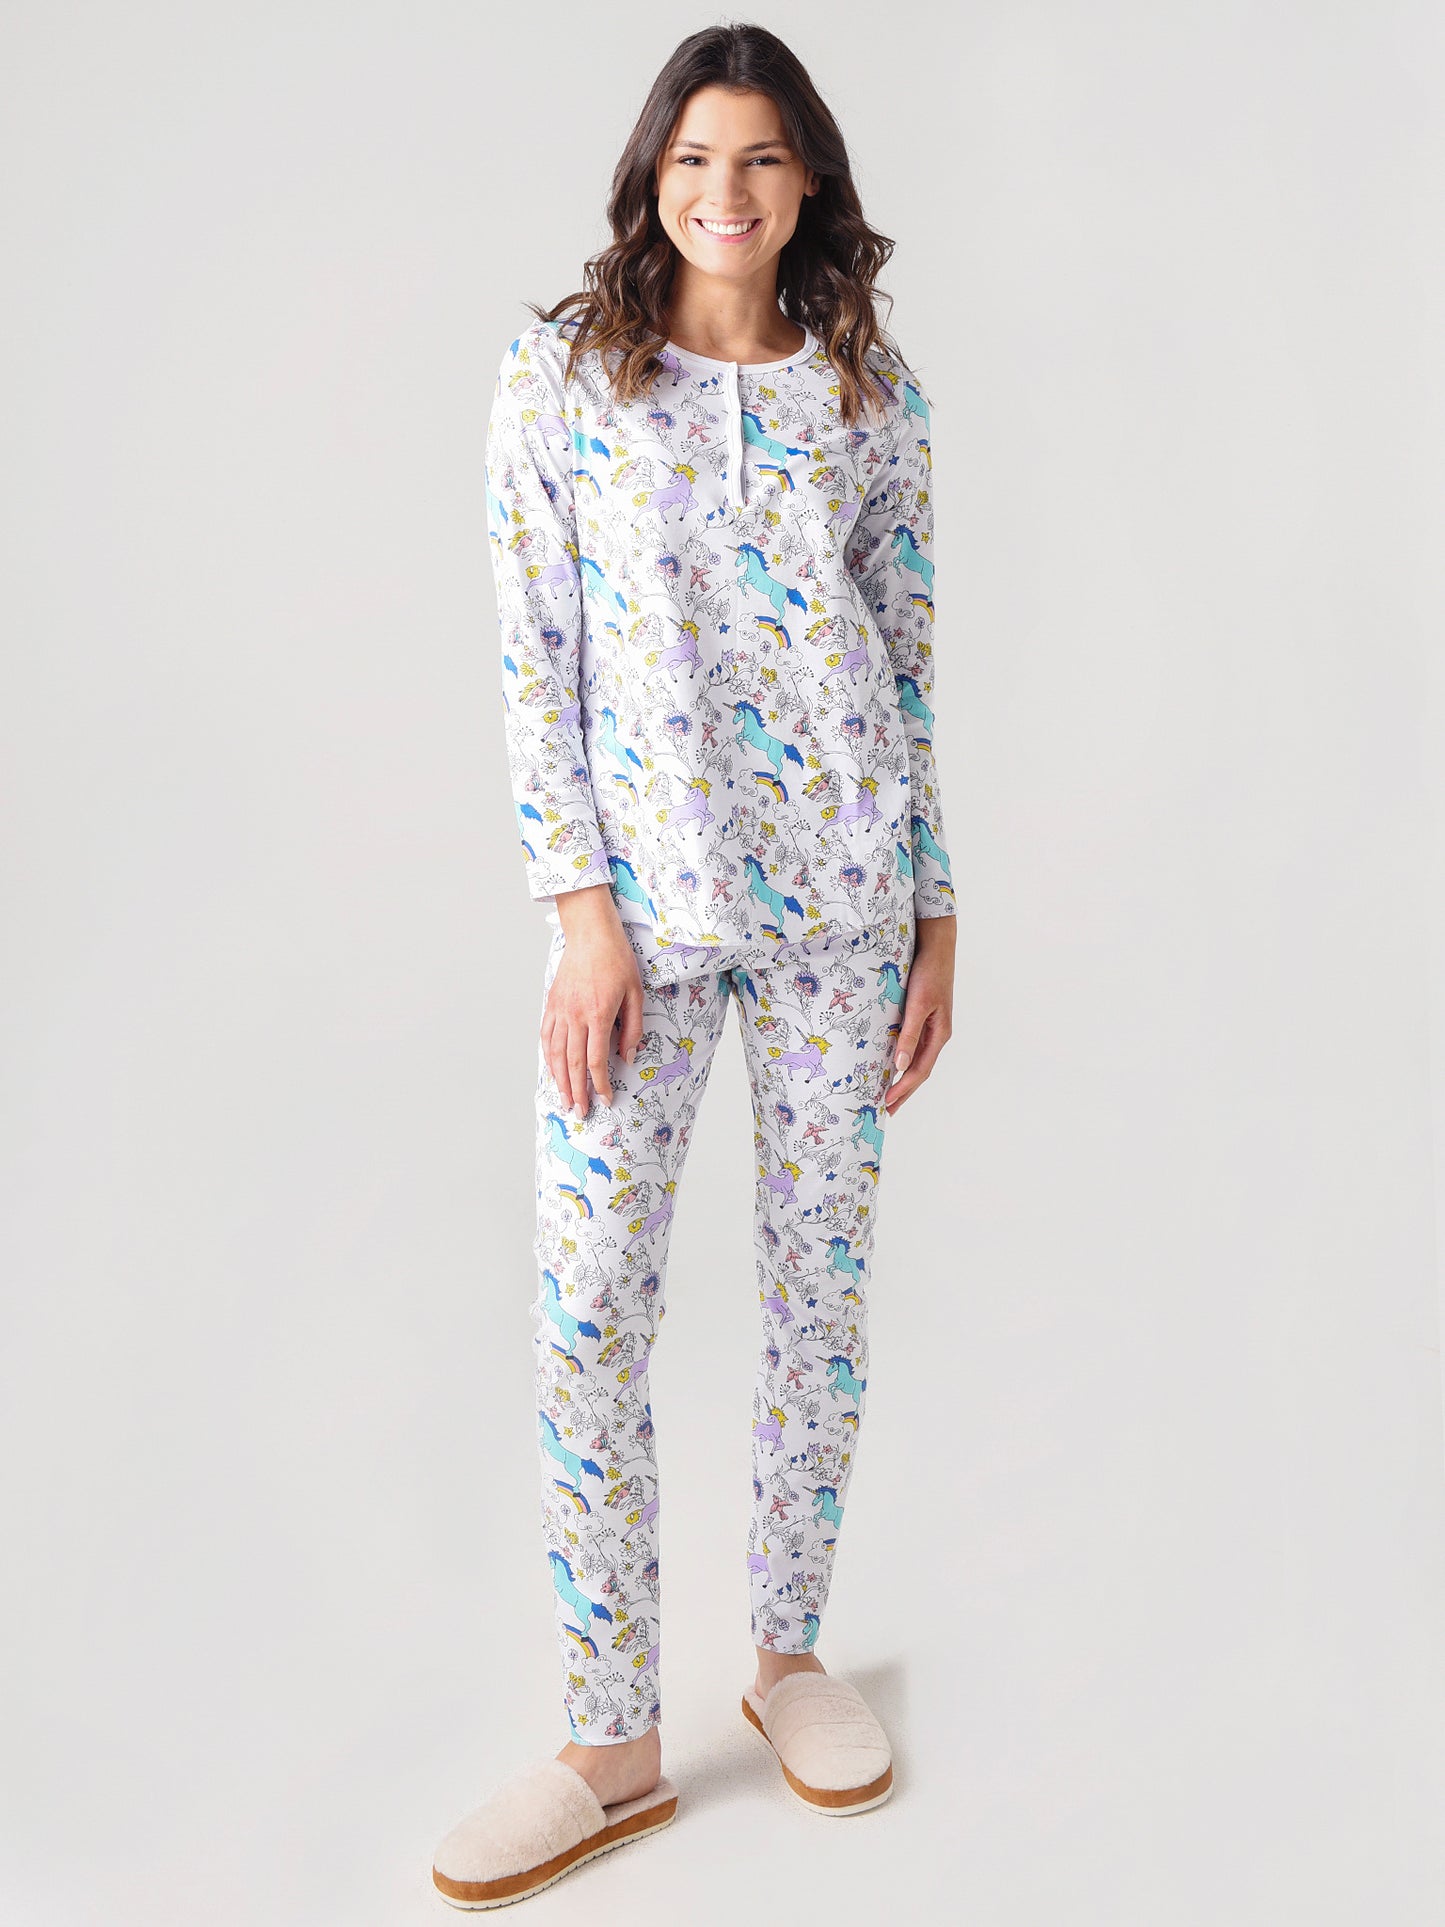 Roller Rabbit Women's Dream For All Pajamas